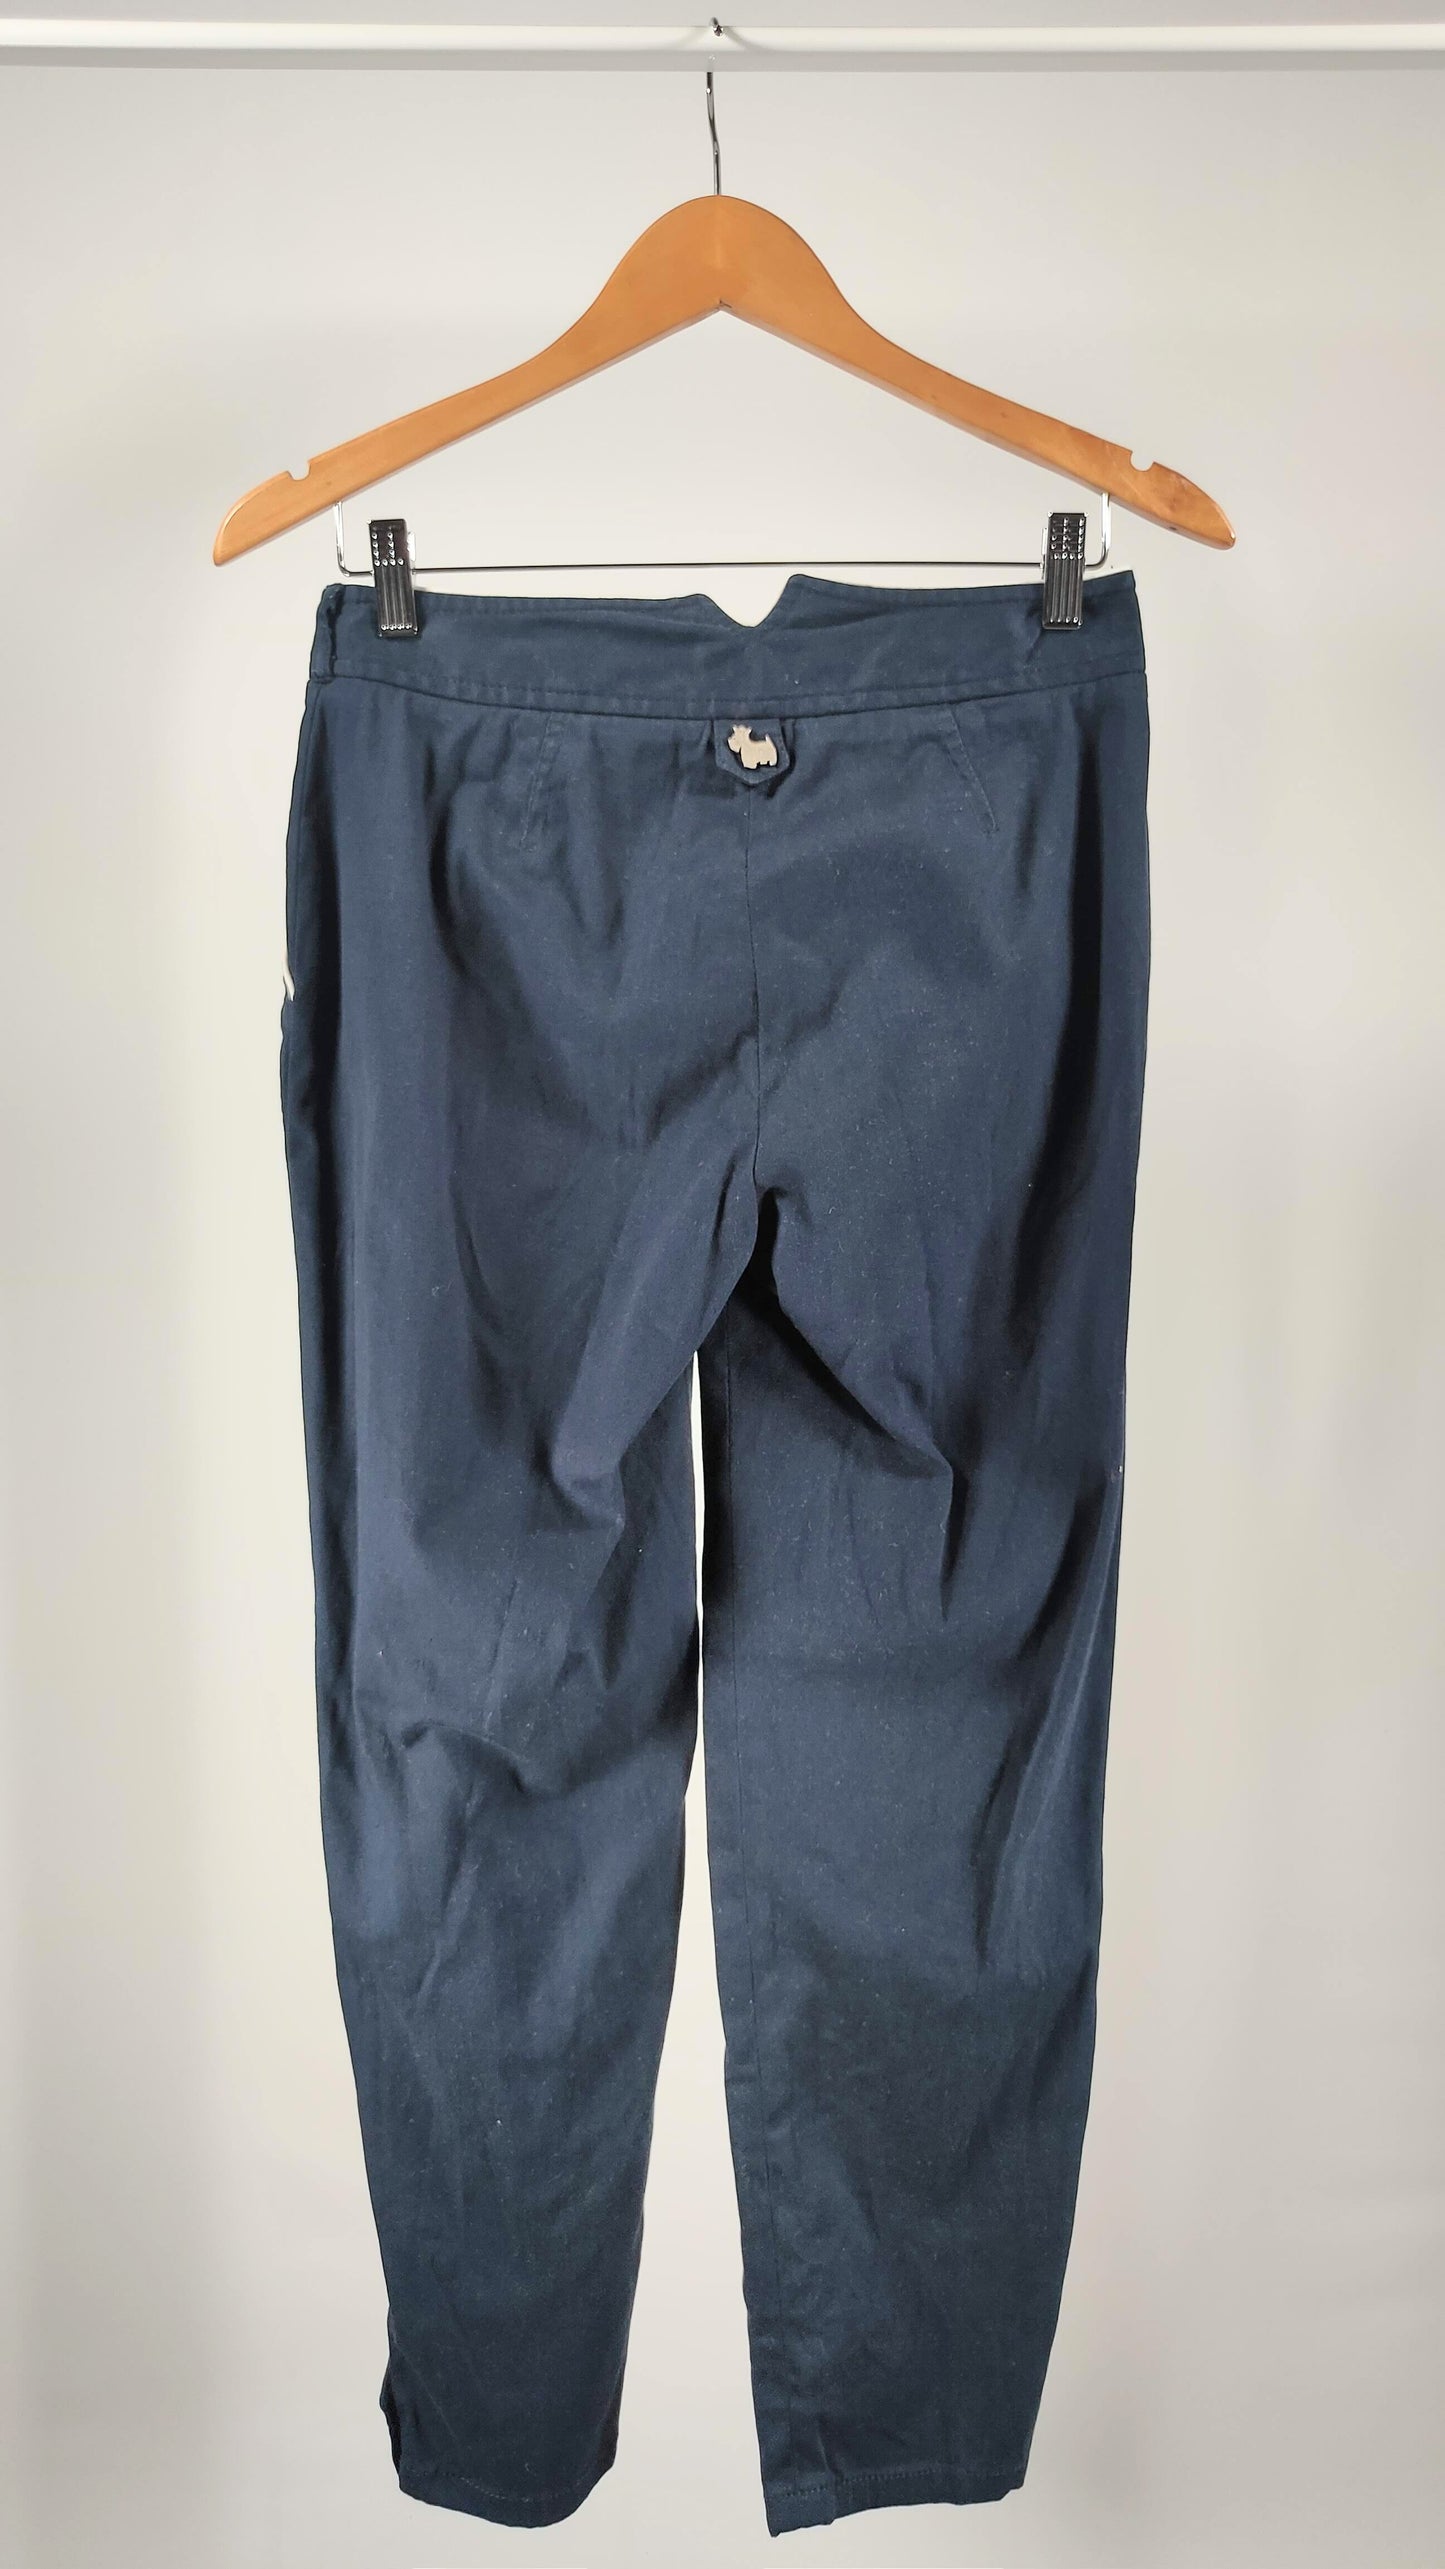 Pantalón azul marino Cottish